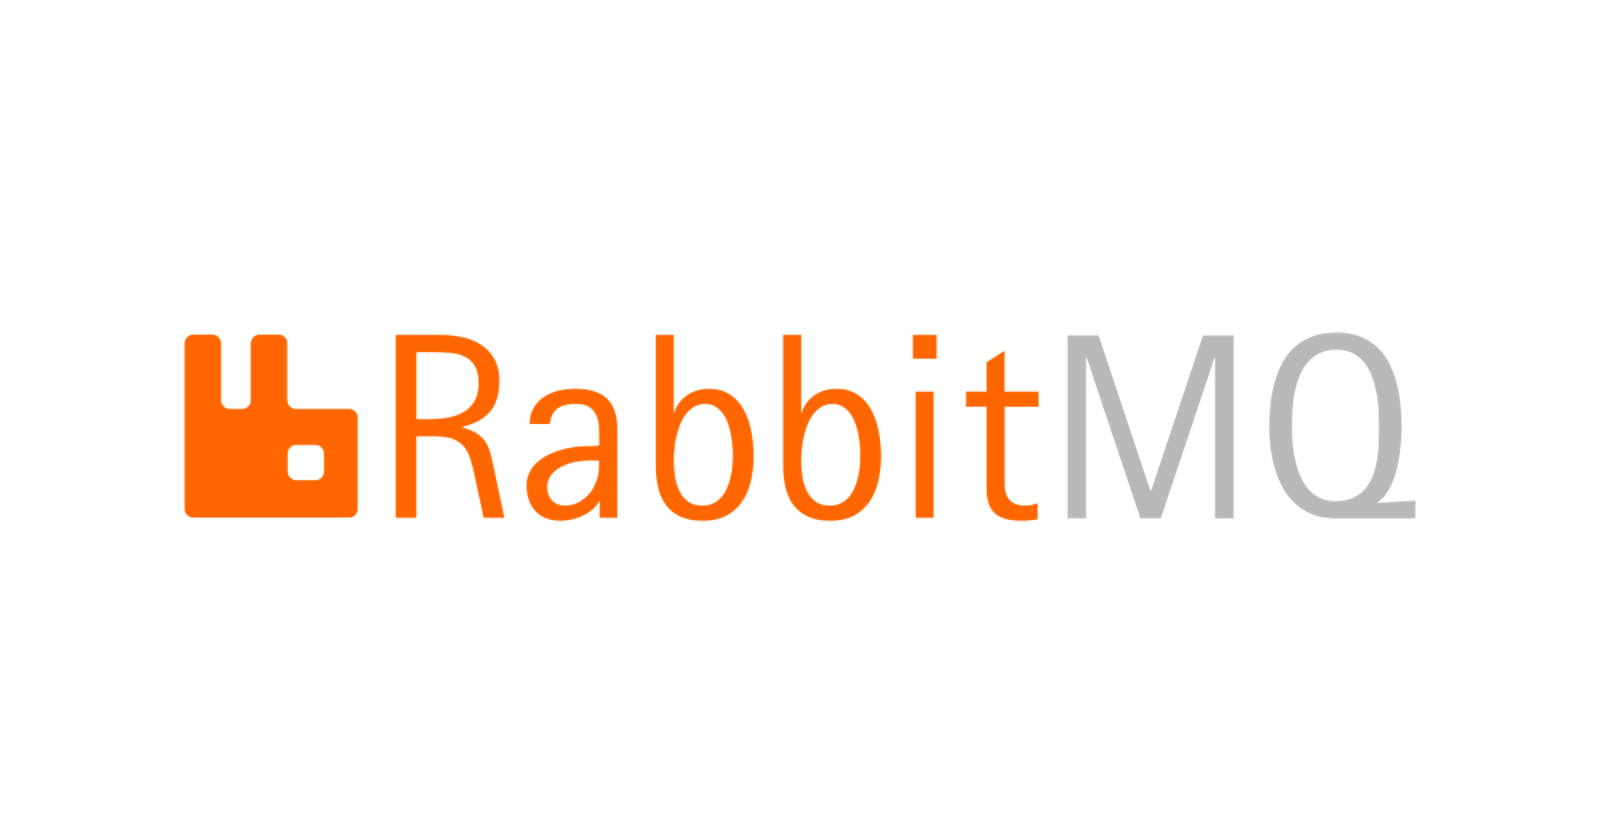 Setting up RabbitMQ on Amazon EC2